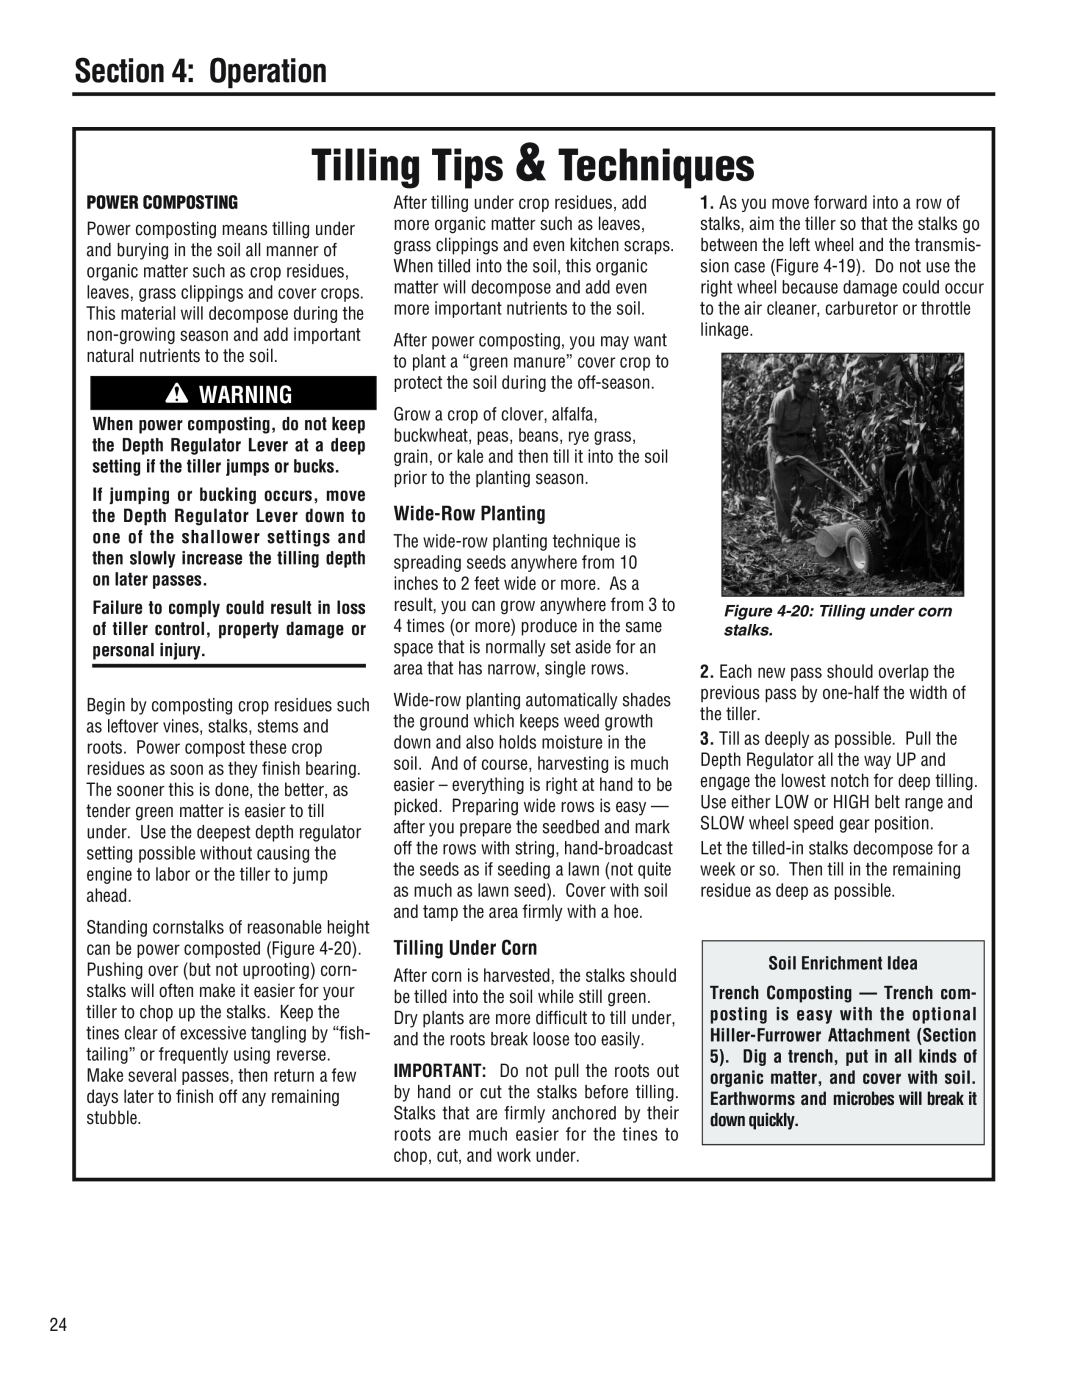 Troy-Bilt 682J Wide-Row Planting, Tilling Under Corn, Power Composting, Soil Enrichment Idea, Tilling Tips & Techniques 